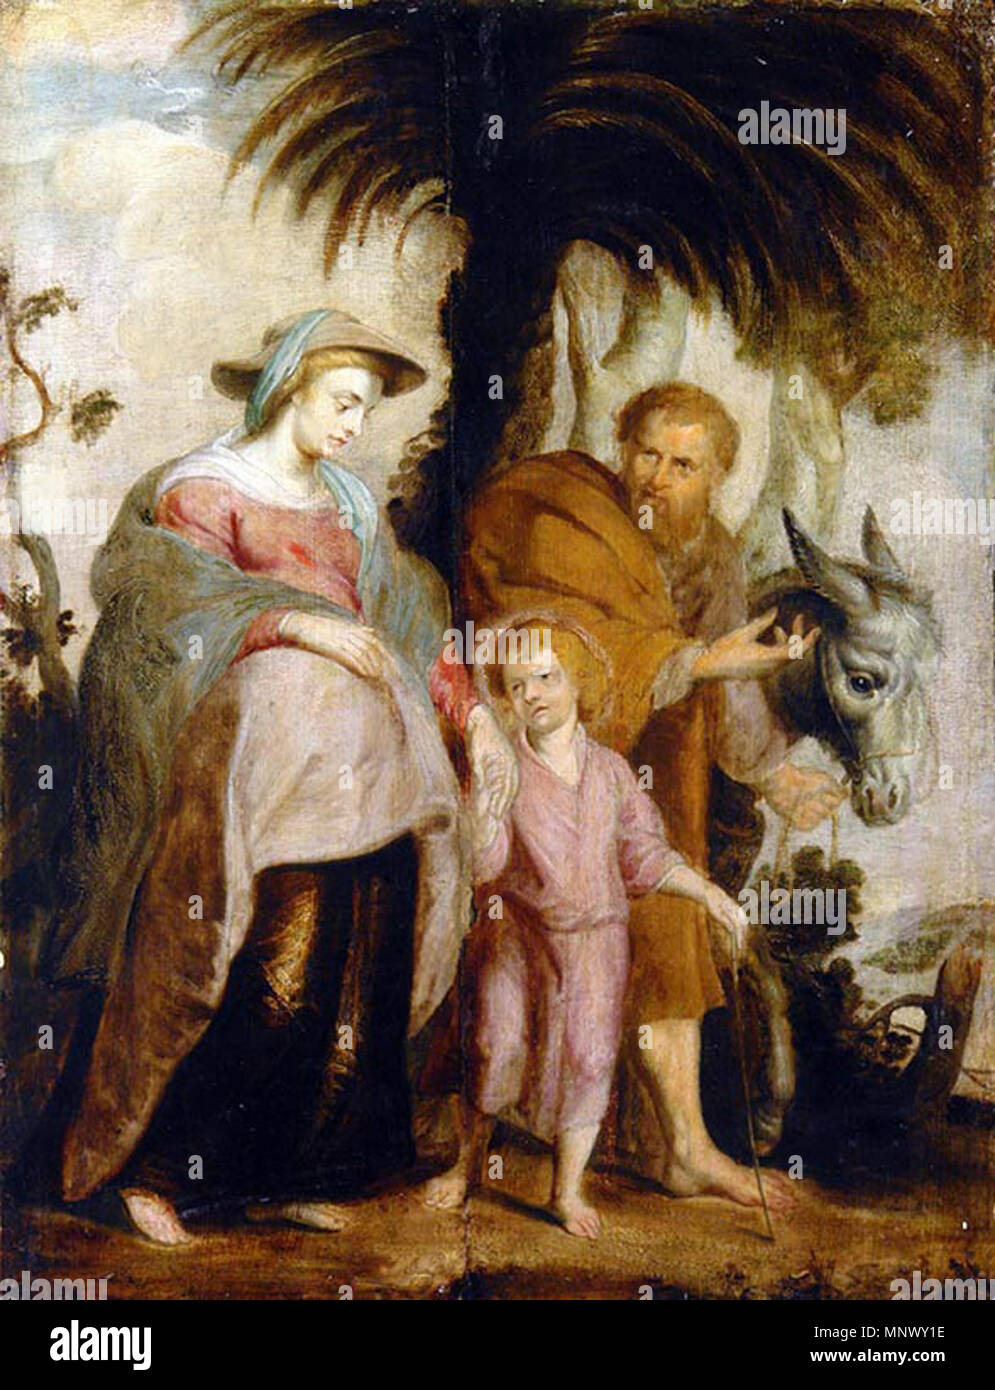 . Un croquis de retour d'Égypte. 1614. Après une anonyme imprimer par Louis XV (I), d'après une peinture de Peter Paul Rubens Rubens 1077. Croquis de retour d'Égypte (1614) Banque D'Images